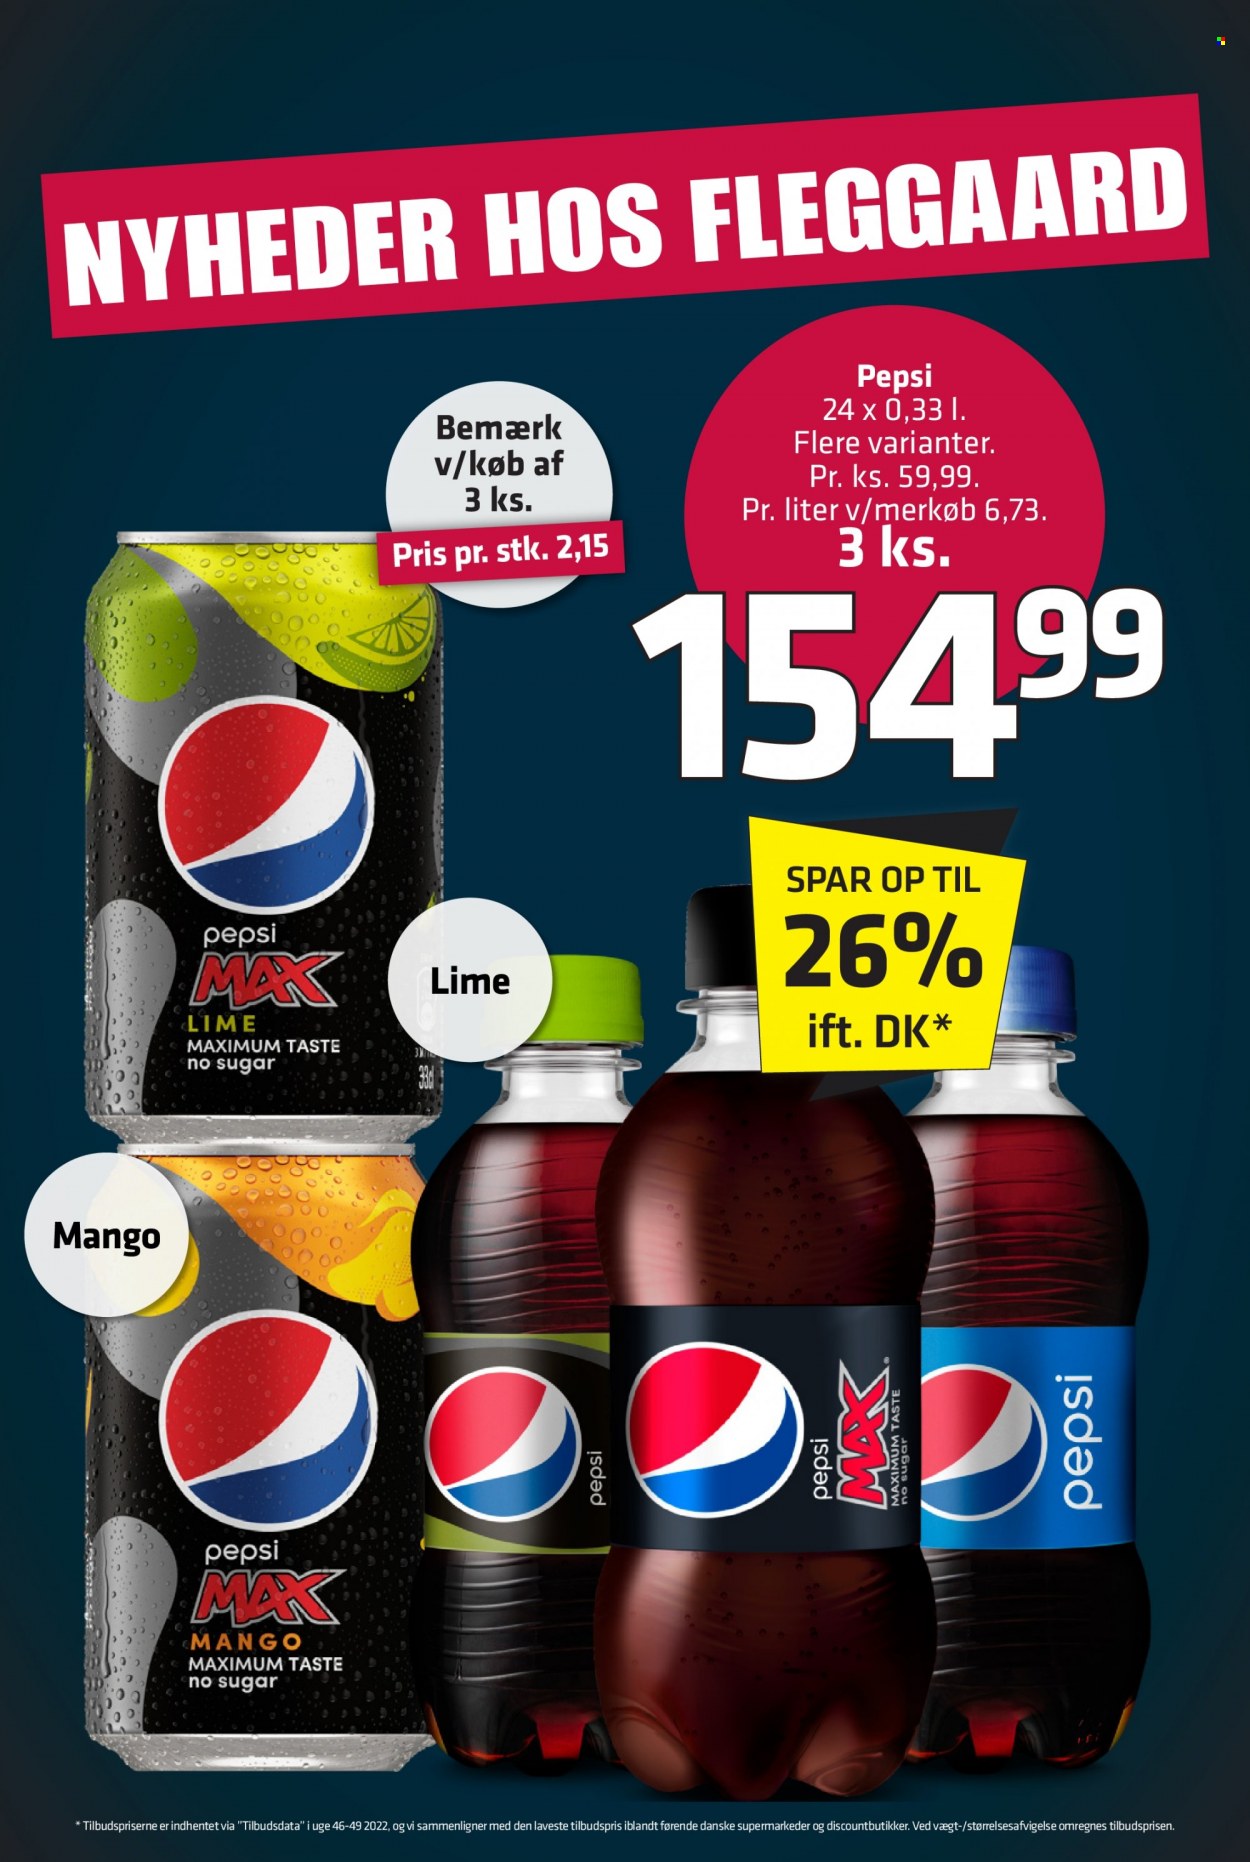 thumbnail - Fleggaard tilbud  - 1.2.2023 - 21.2.2023 - tilbudsprodukter - mango, Pepsi, Pepsi Max. Side 33.